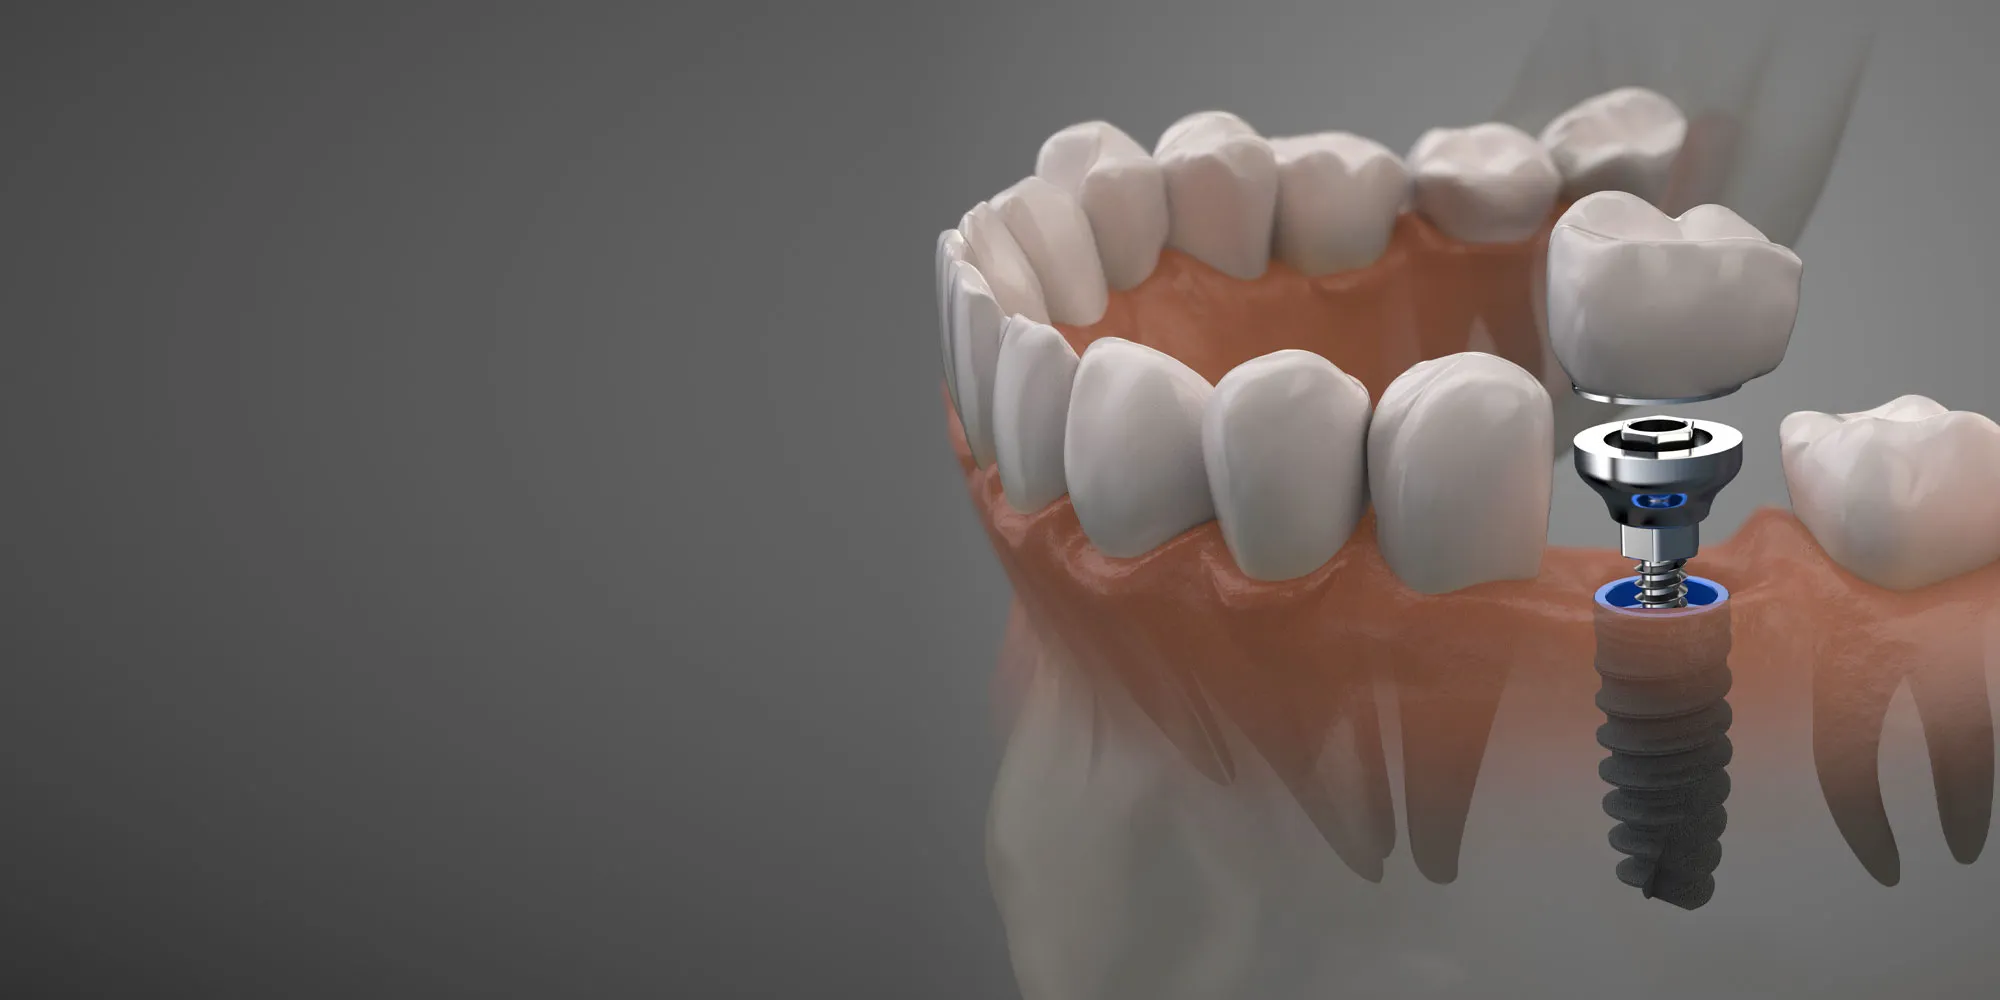 Cấy ghép implant khi bệnh nhân mất răng